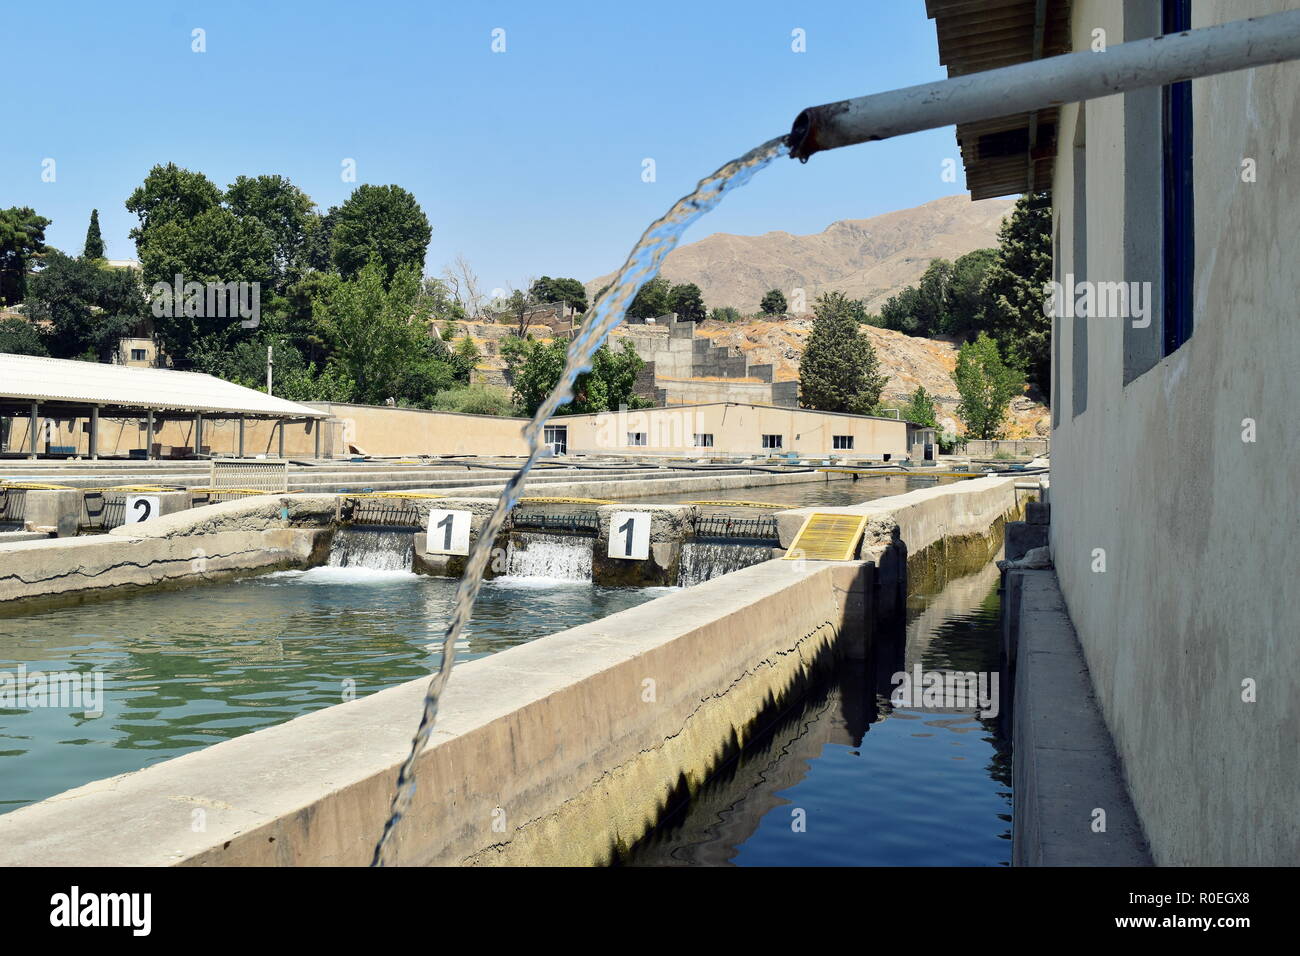 Piscines d'eau de l'aquaculture de poissons de la pêche l'agriculture à Karaj, près de Téhéran, l'Iran, l'élevage et la vente de tache rouge, truite arc-en-ciel et saumon caspienne Banque D'Images